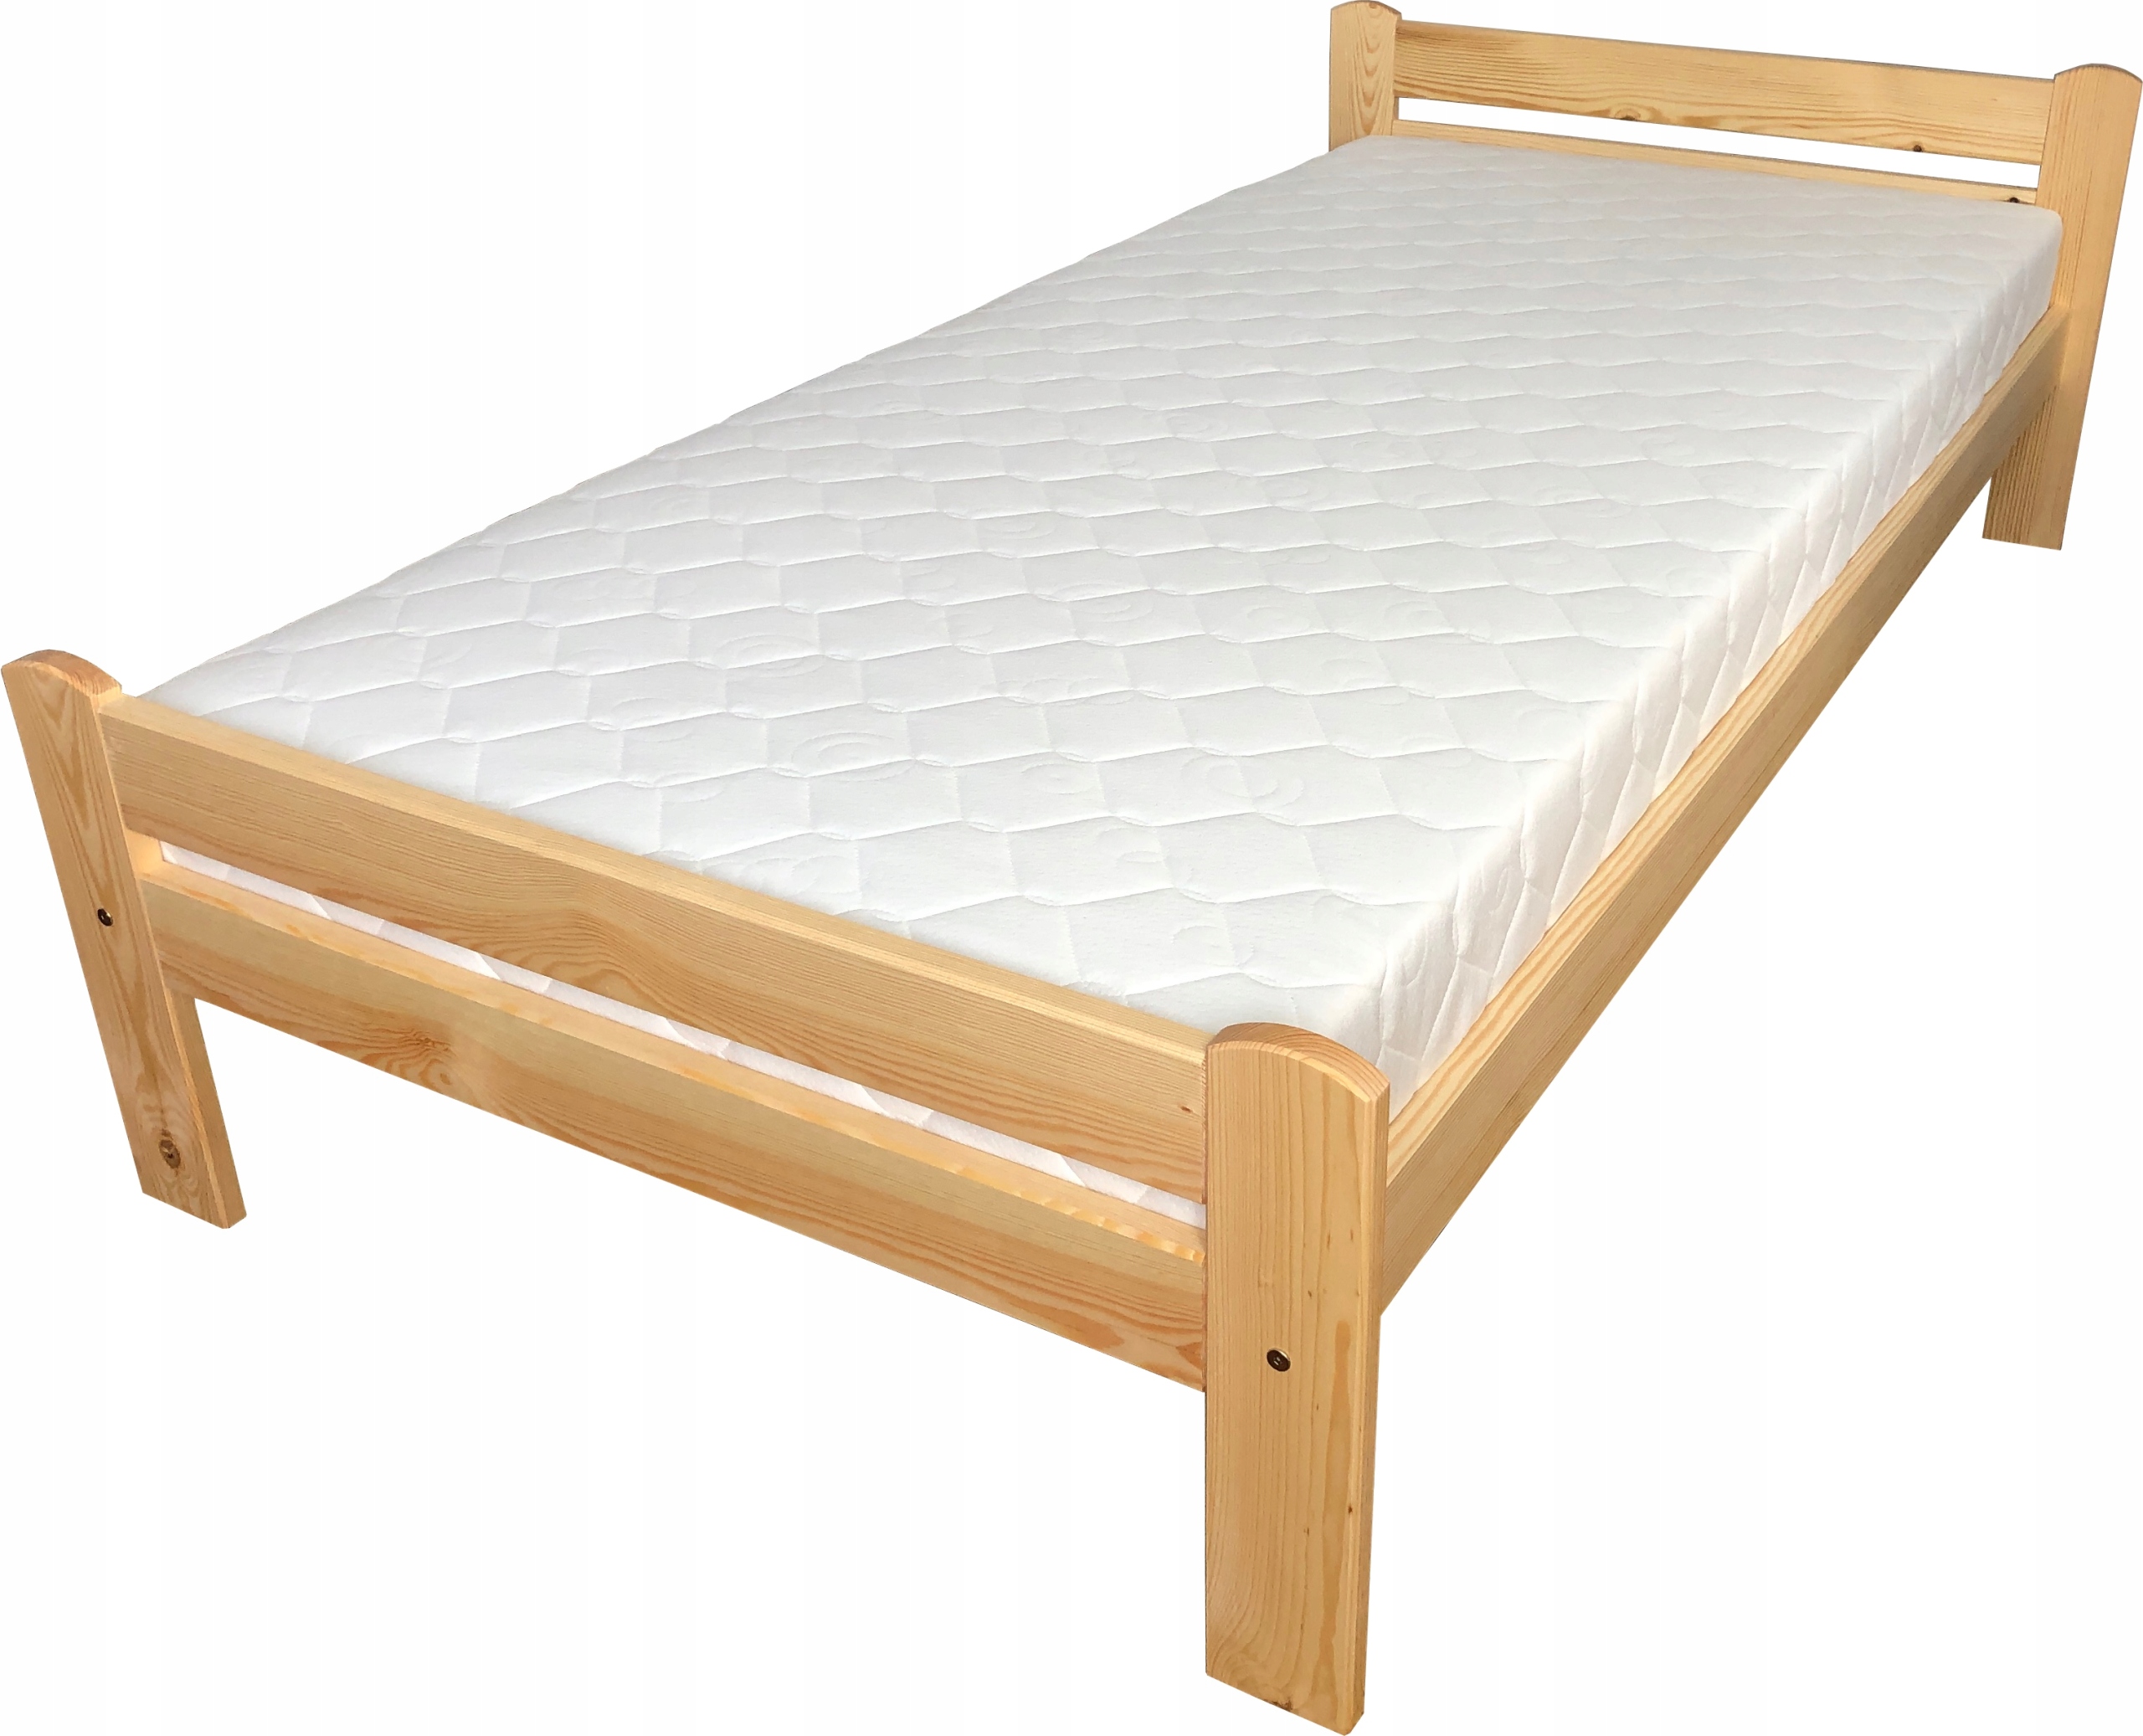 Купить деревянную кровать недорого